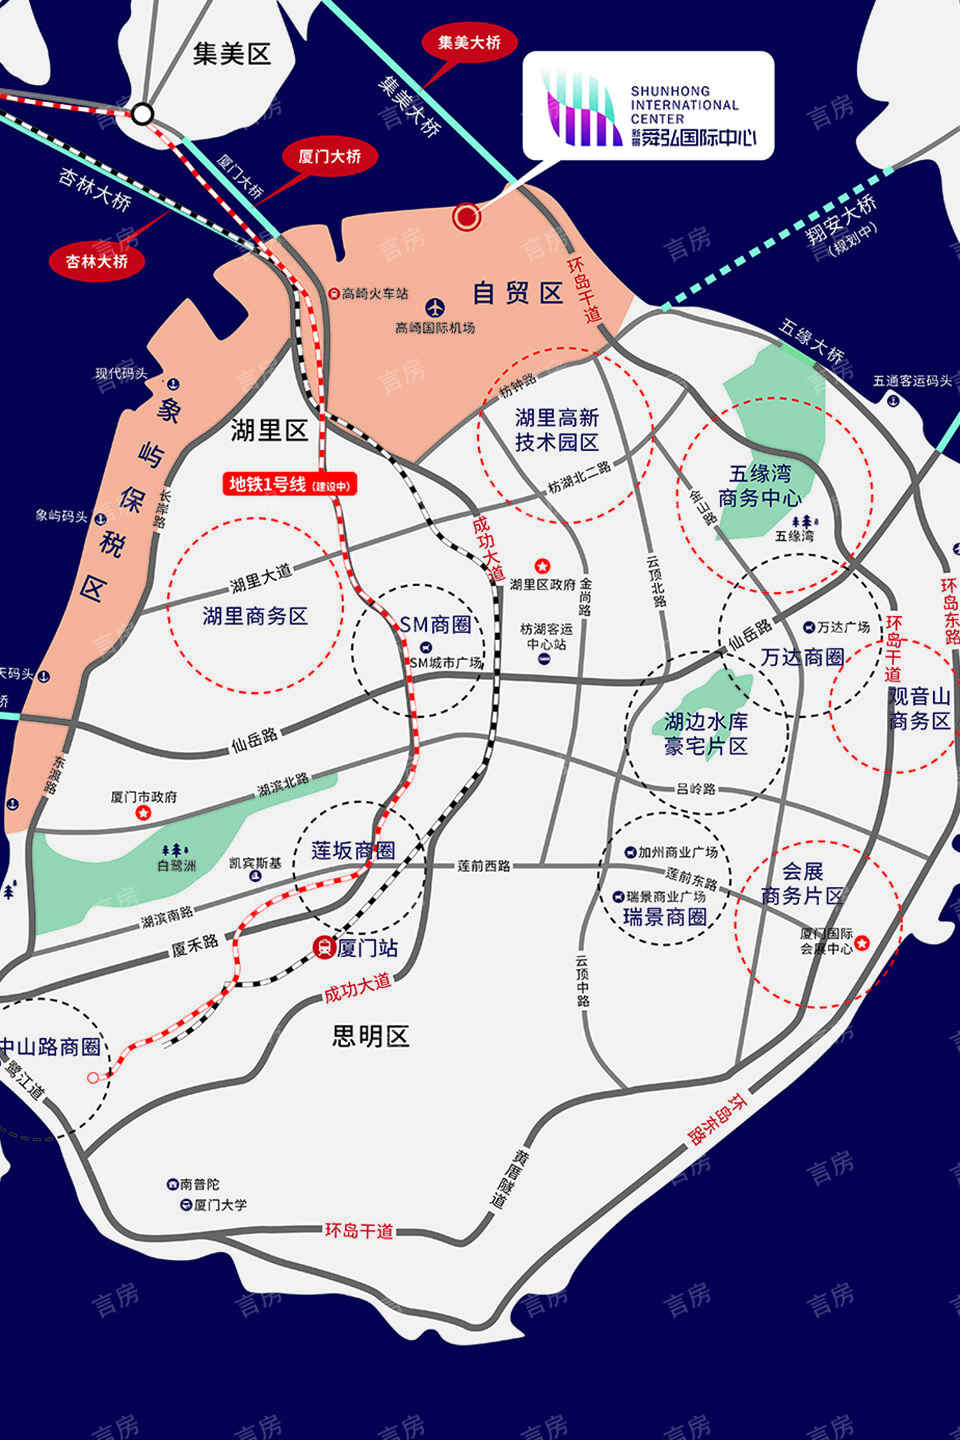 新景舜弘国际中心位置图